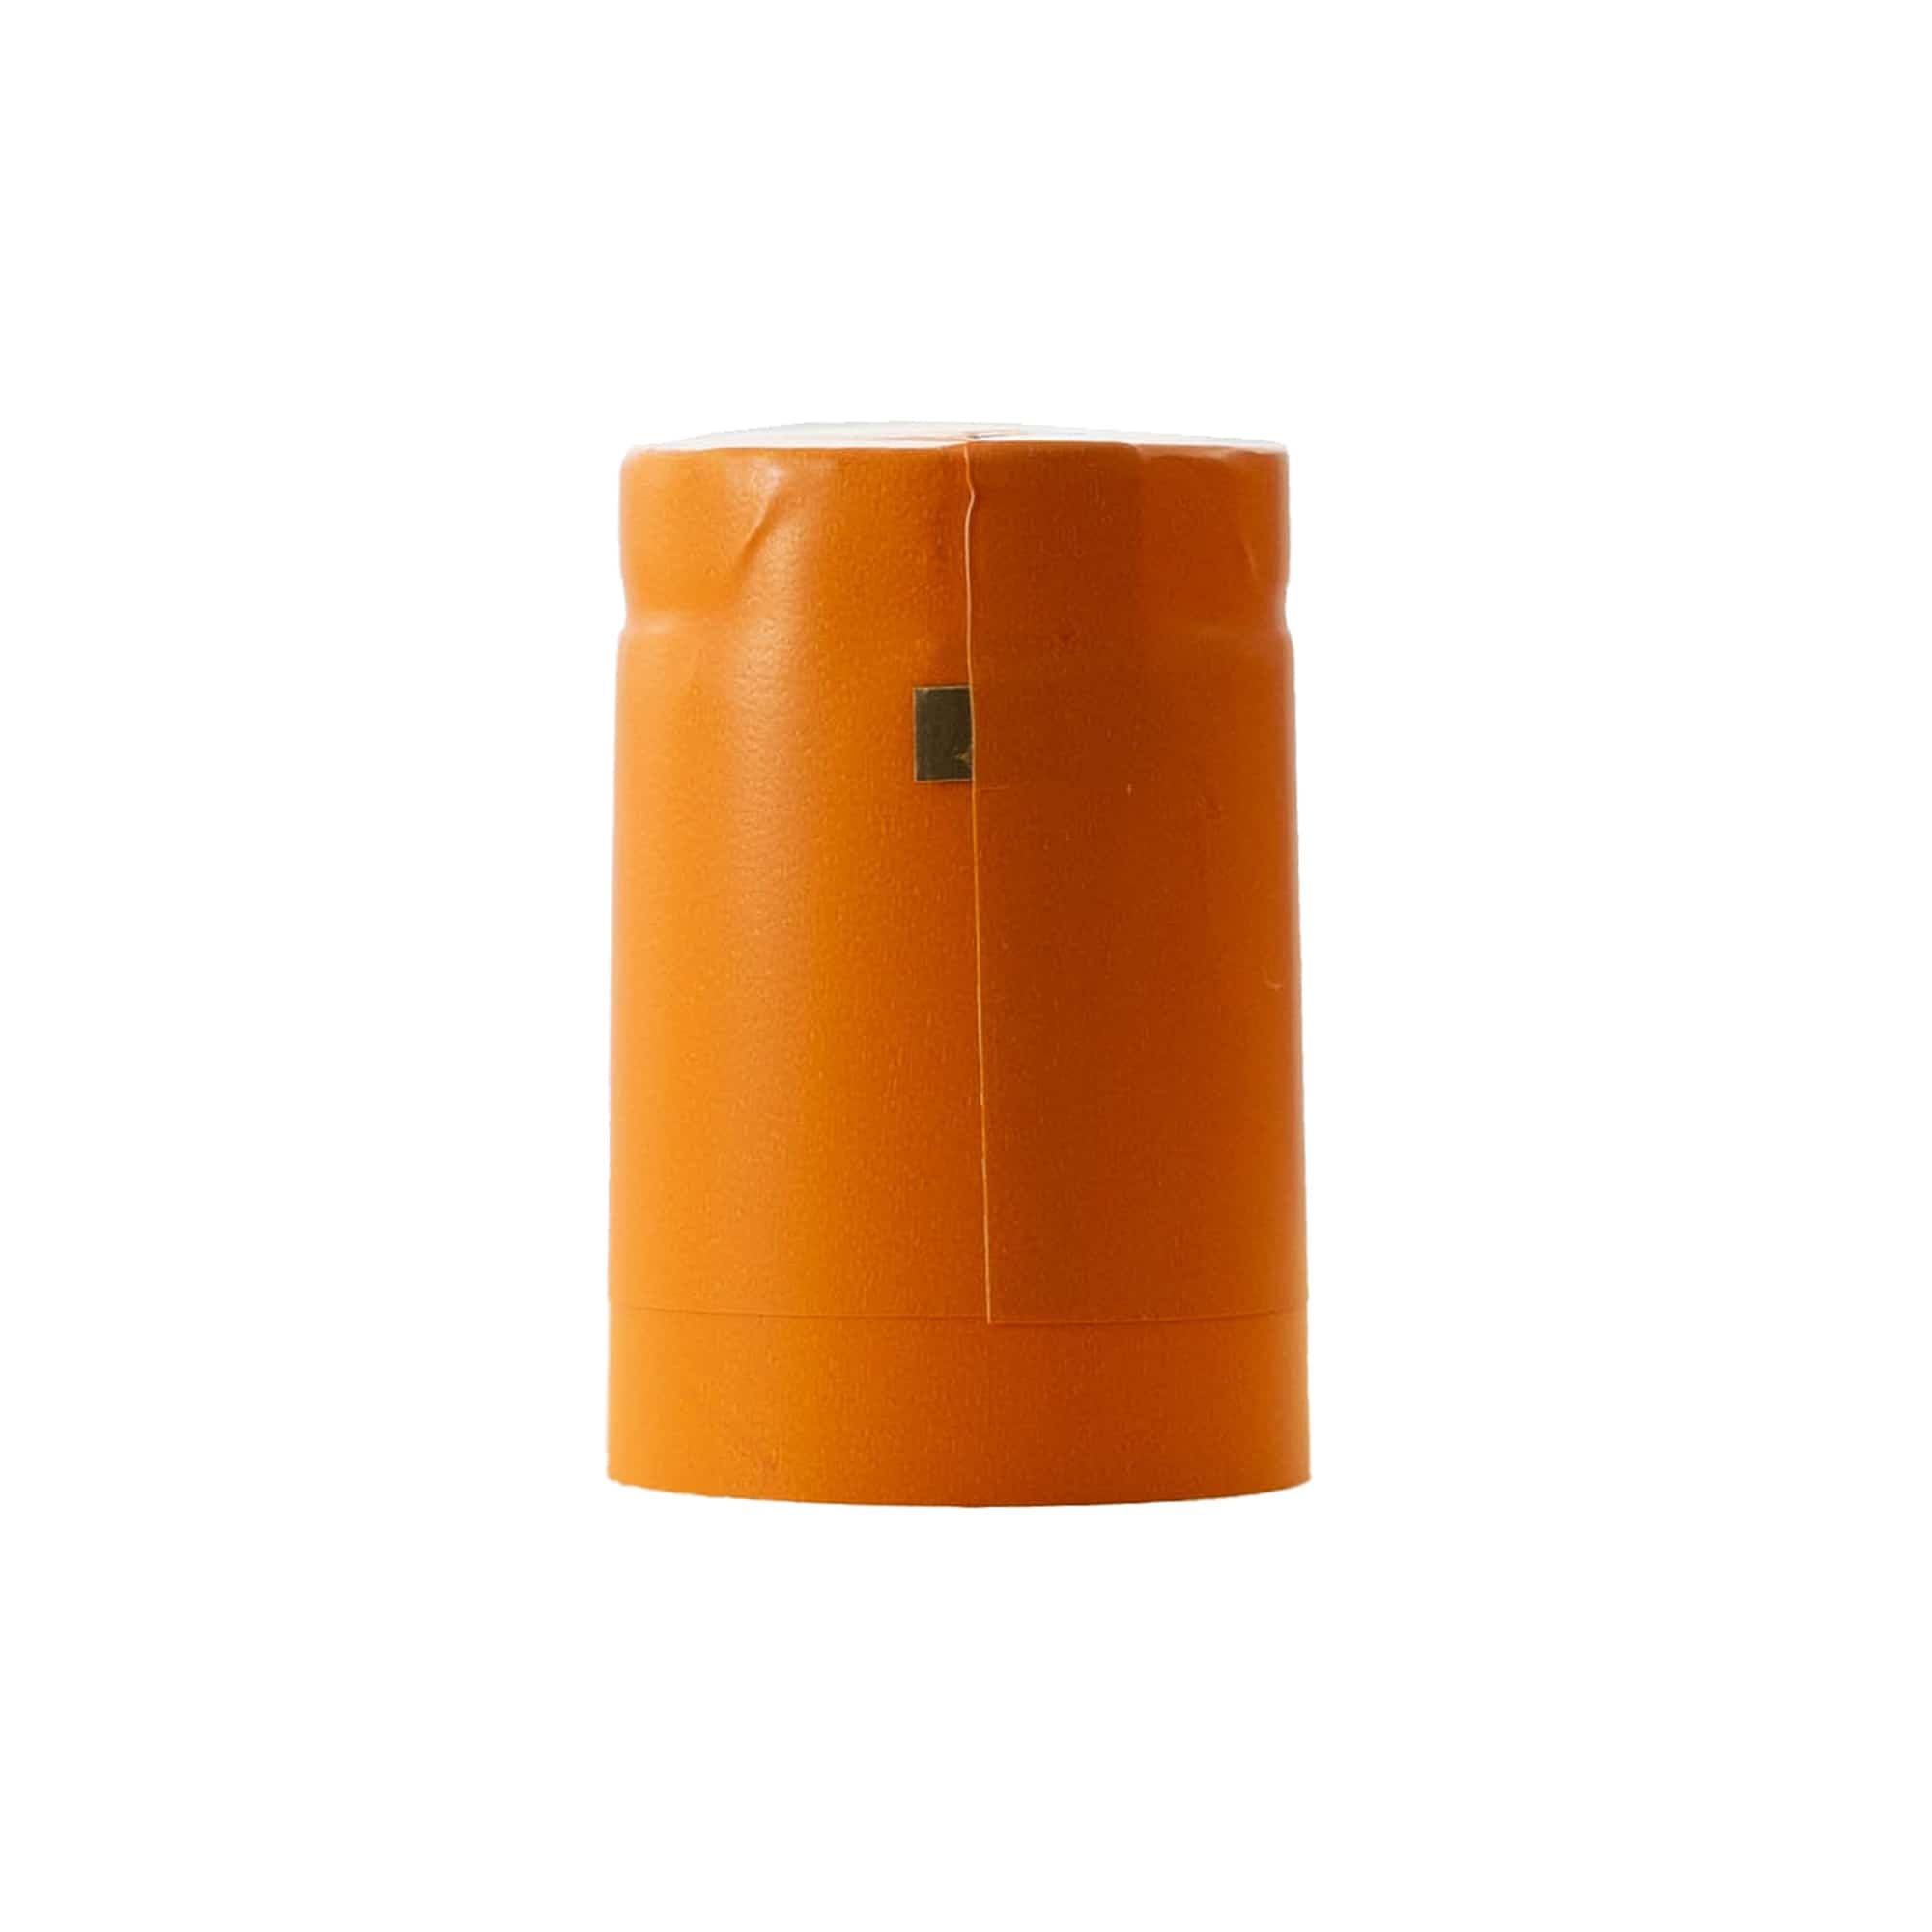 Kapturek termokurczliwy 32x41, tworzywo sztuczne PVC, kolor pomarańczowy